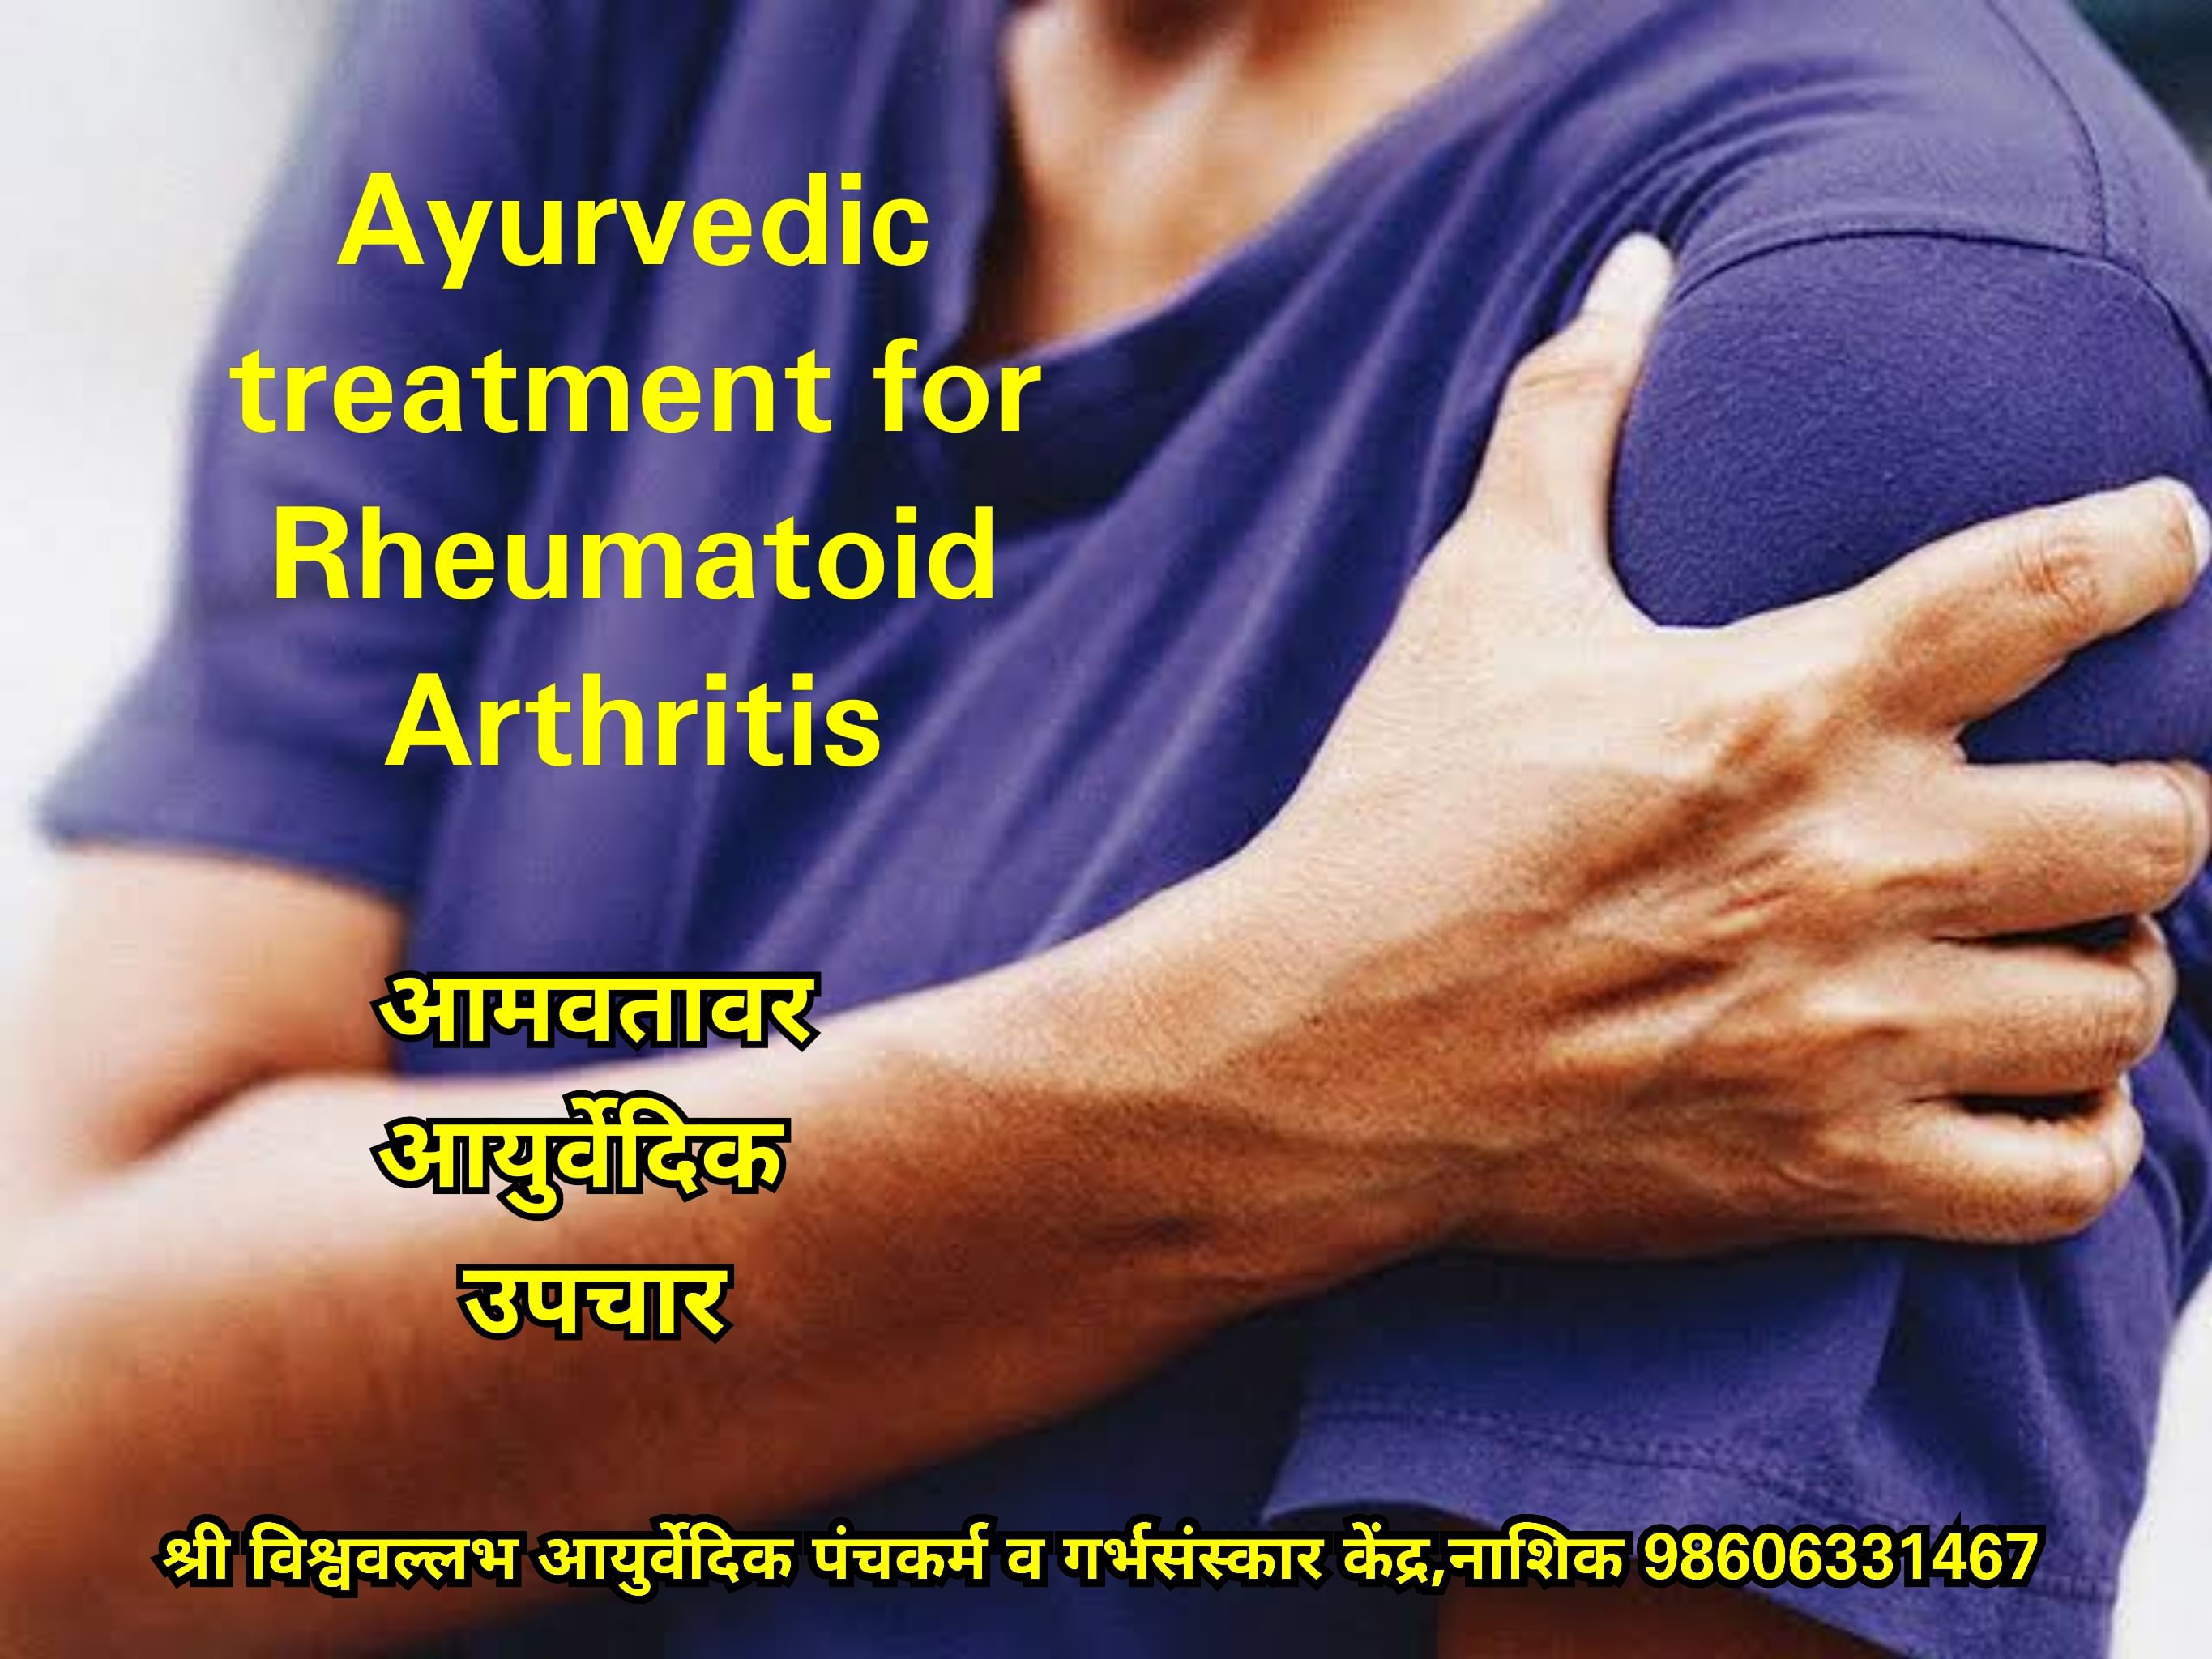 Rheumatoid Arthritis ayurvedic treatment